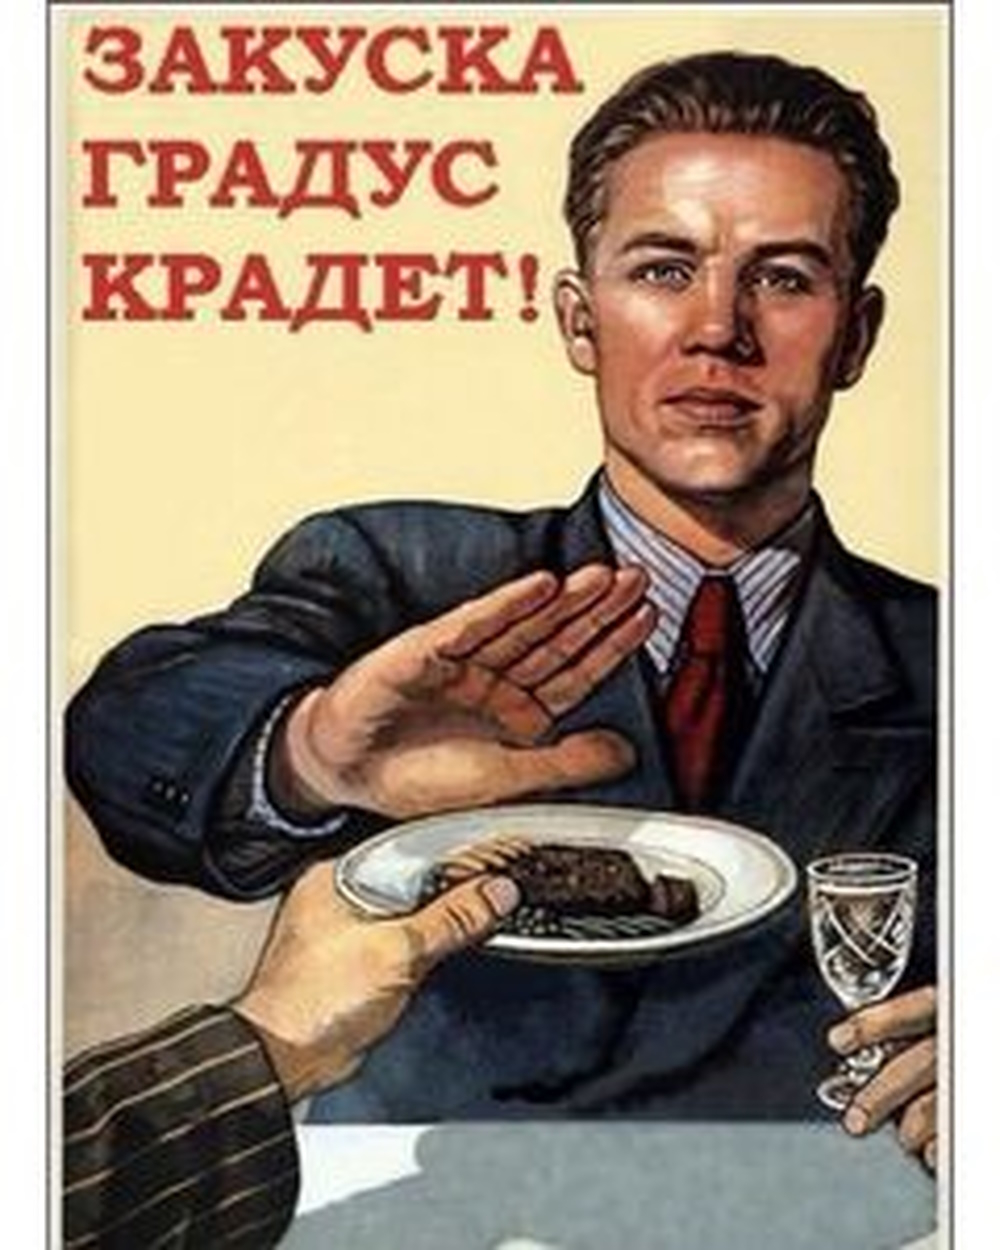 Прикольные слоганы. Прикольные плакаты. Советские плакаты юмористические. Плакаты про пьянство. Переделанные советские плакаты.